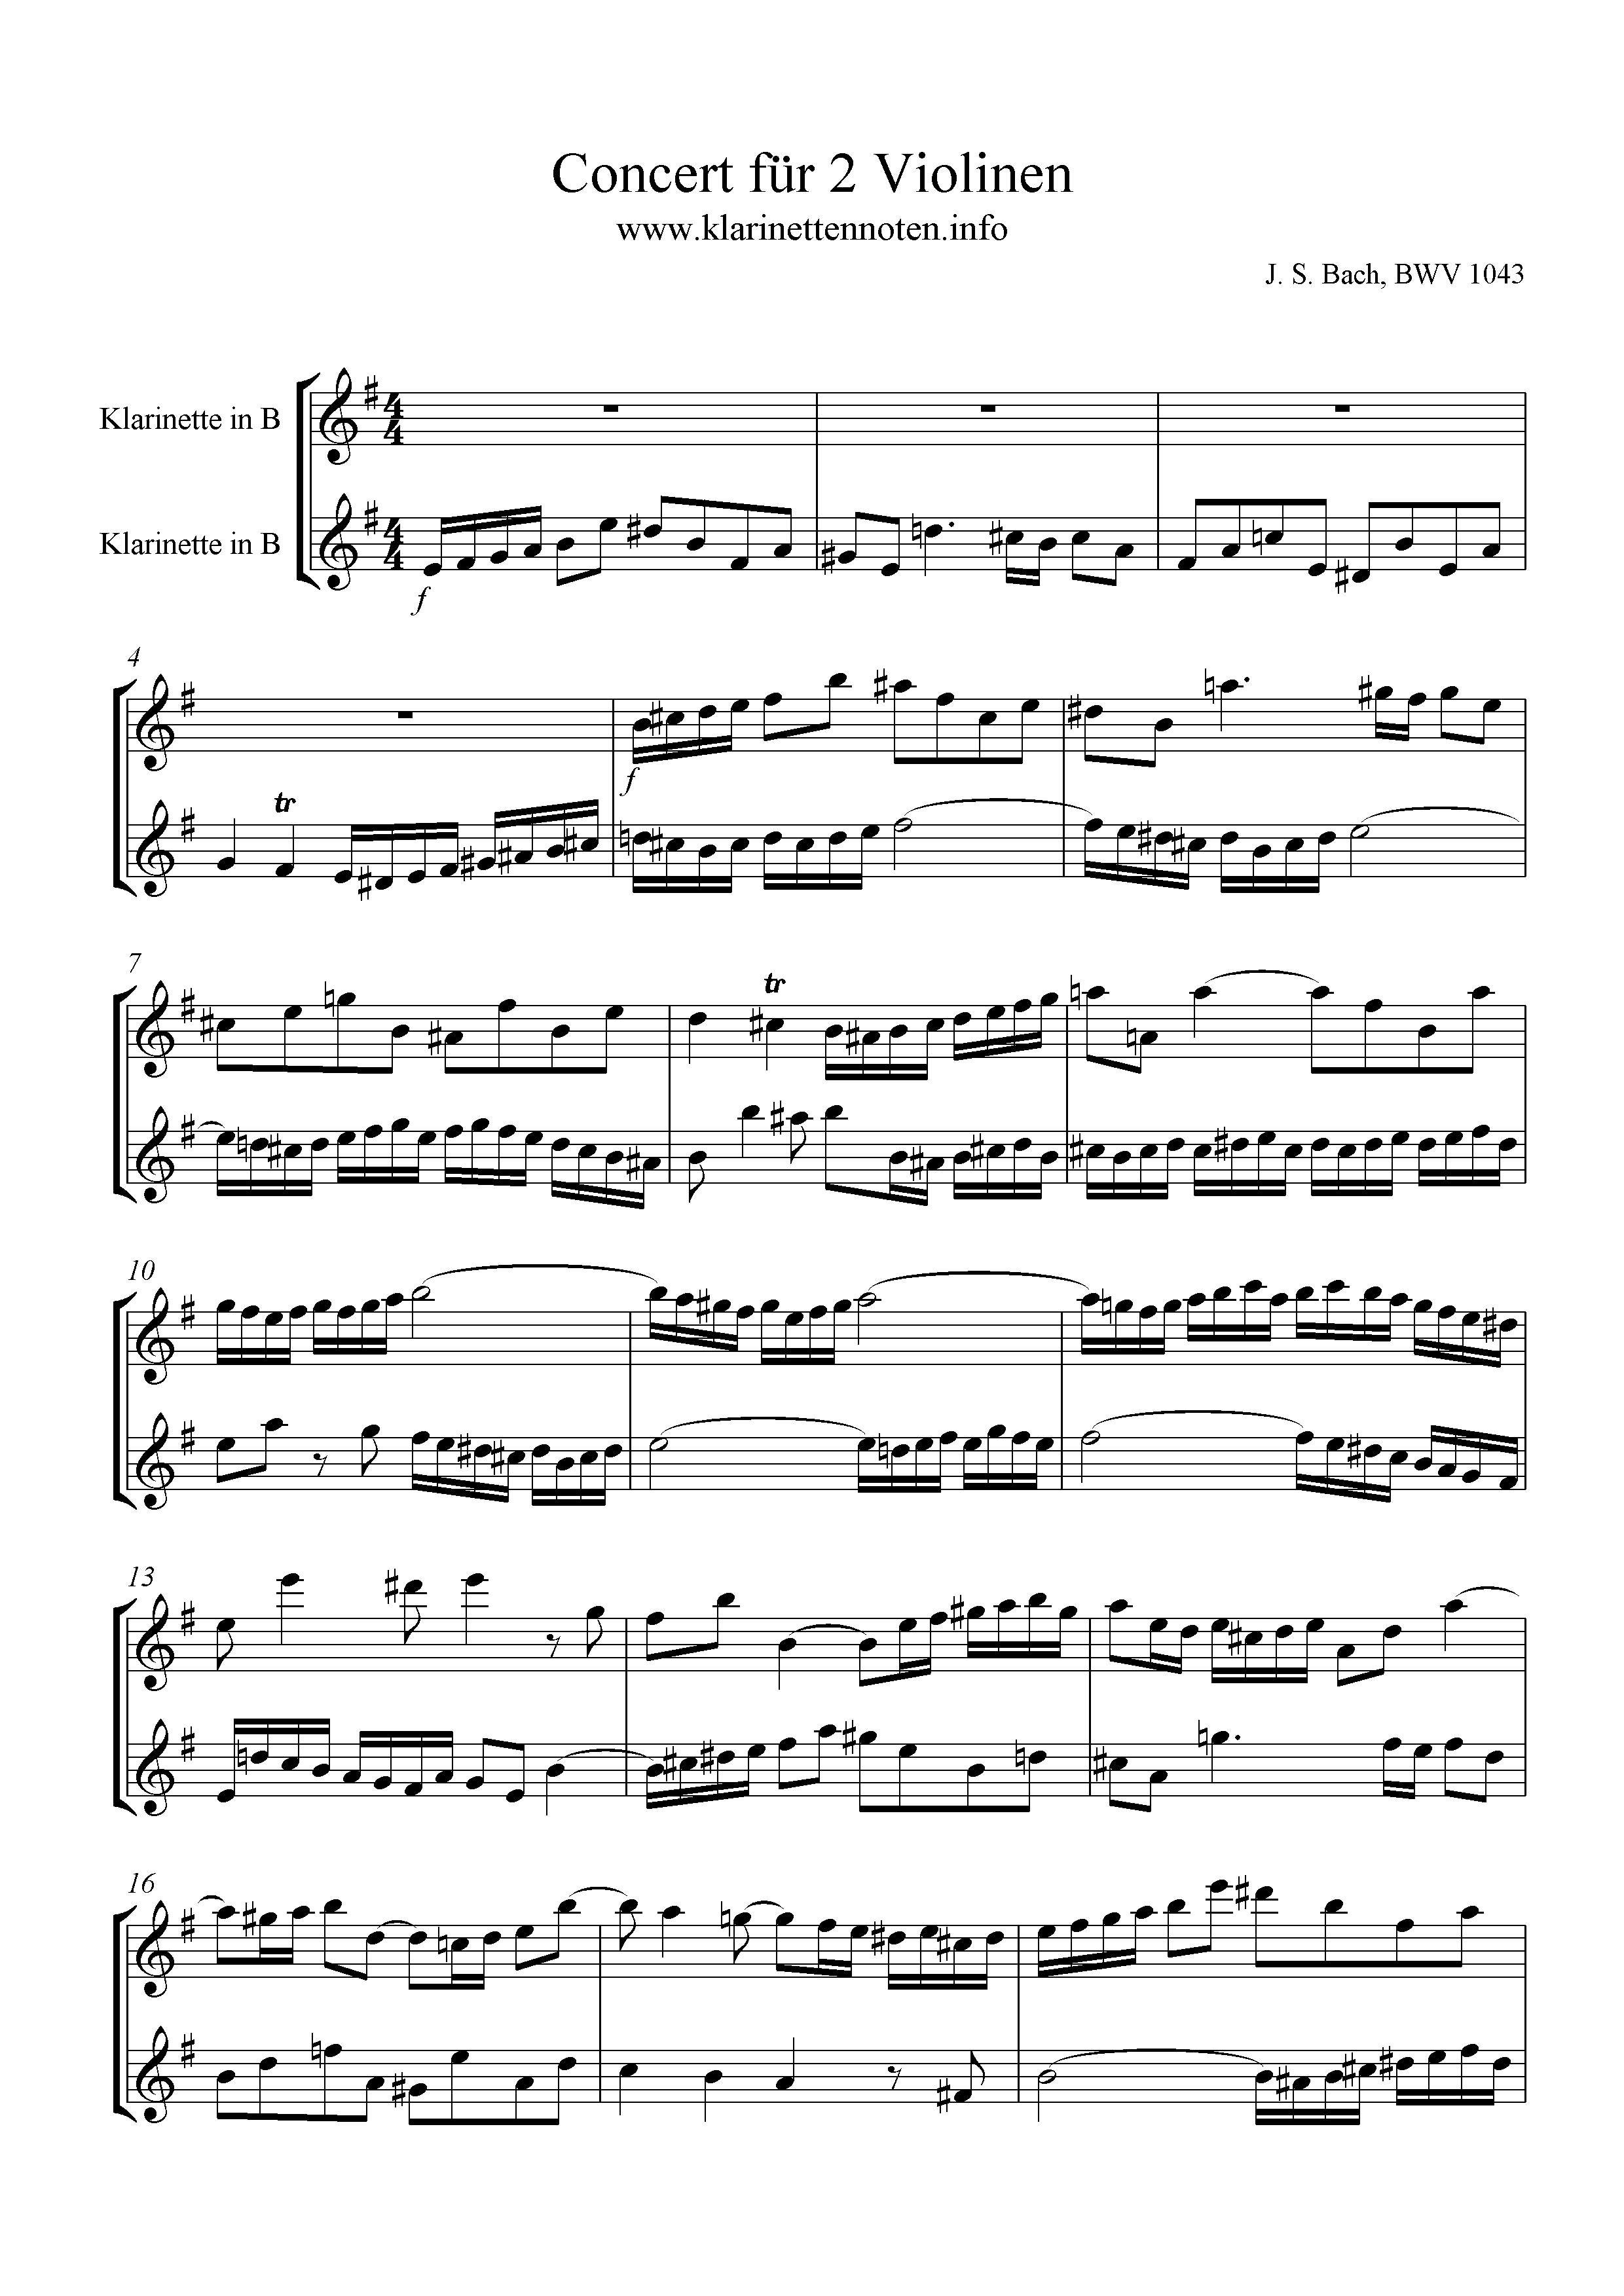 Noten Concert für 2 Violinen- BWV 1043